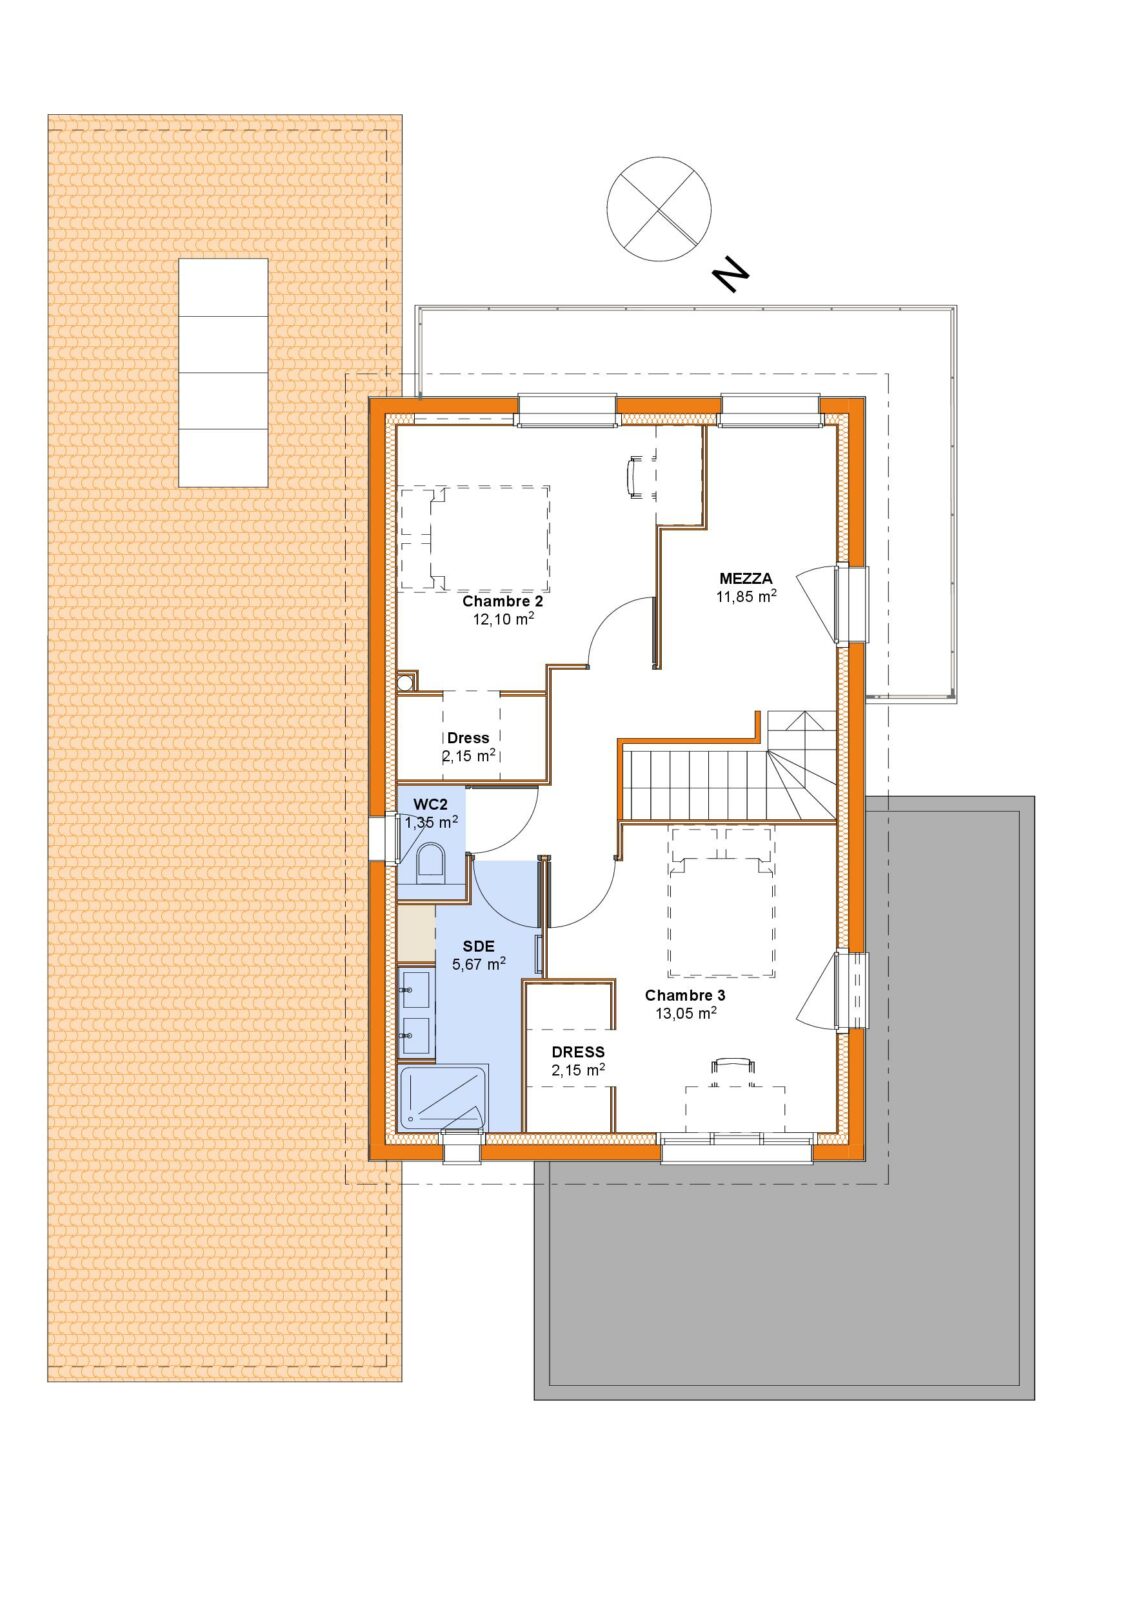 plan étage Maison contemporaine habillage ZINC